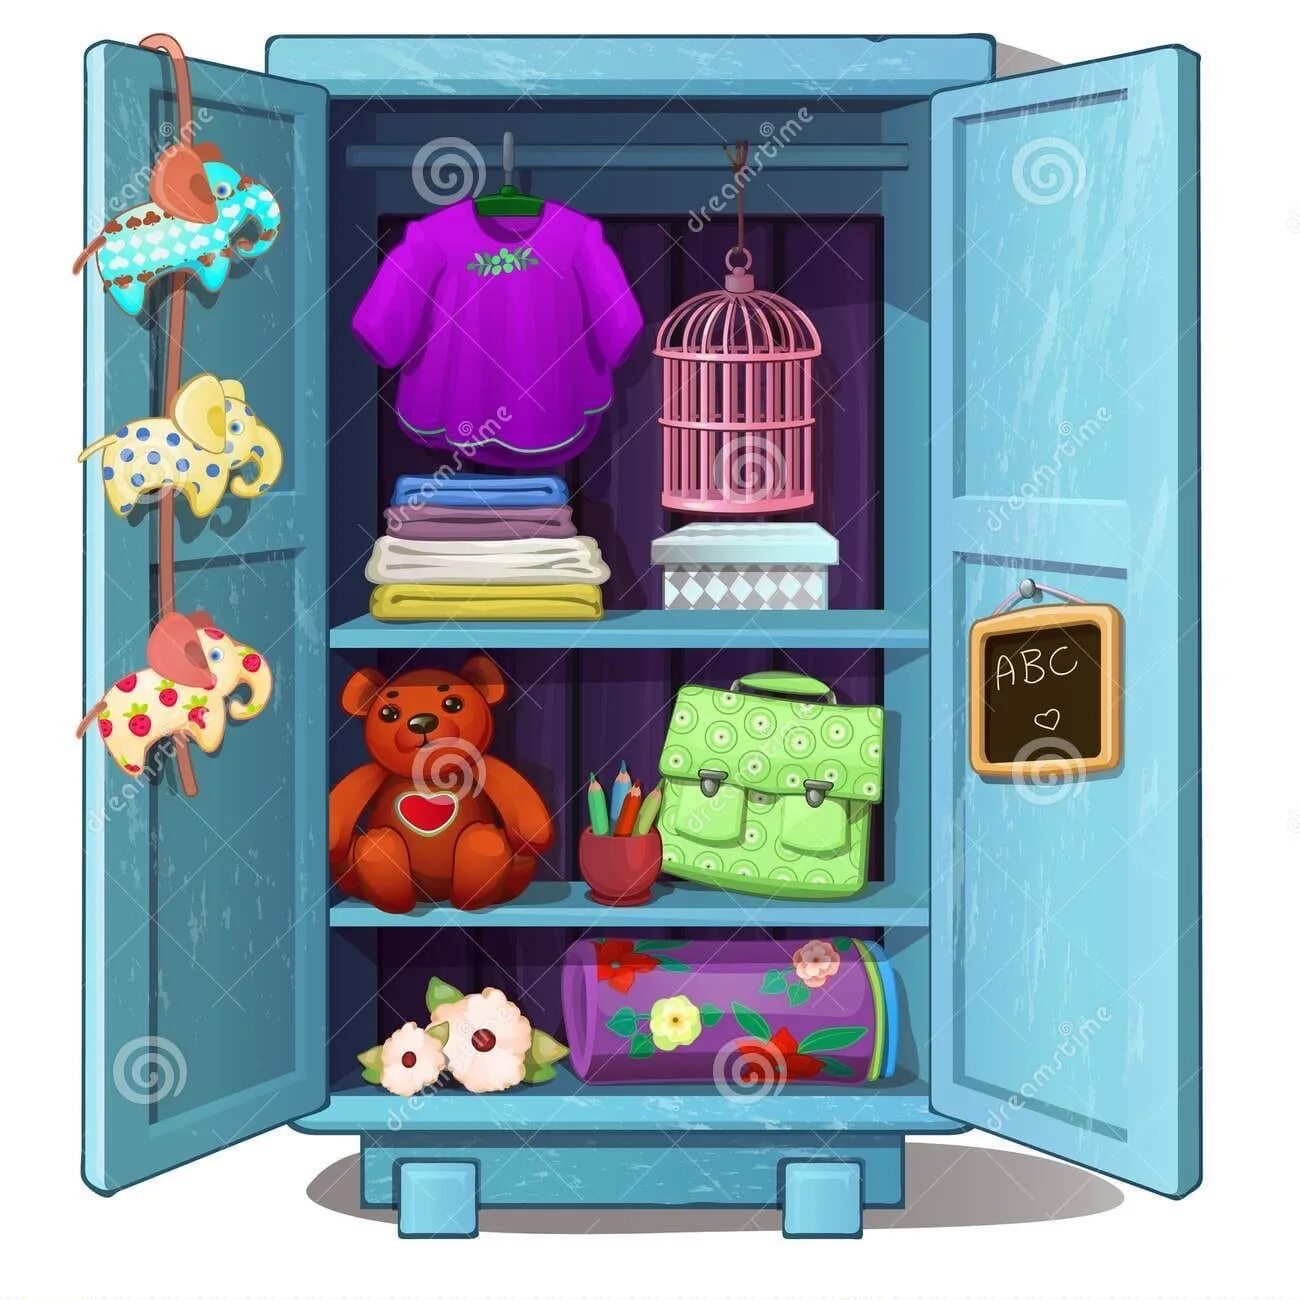 Шкаф мультяшный. Мультяшный шкаф для одежды. Шкаф открытый с вещами для детей. Детская мультяшный шкаф с одеждой. Волшебный шкафчик оживляет игрушки